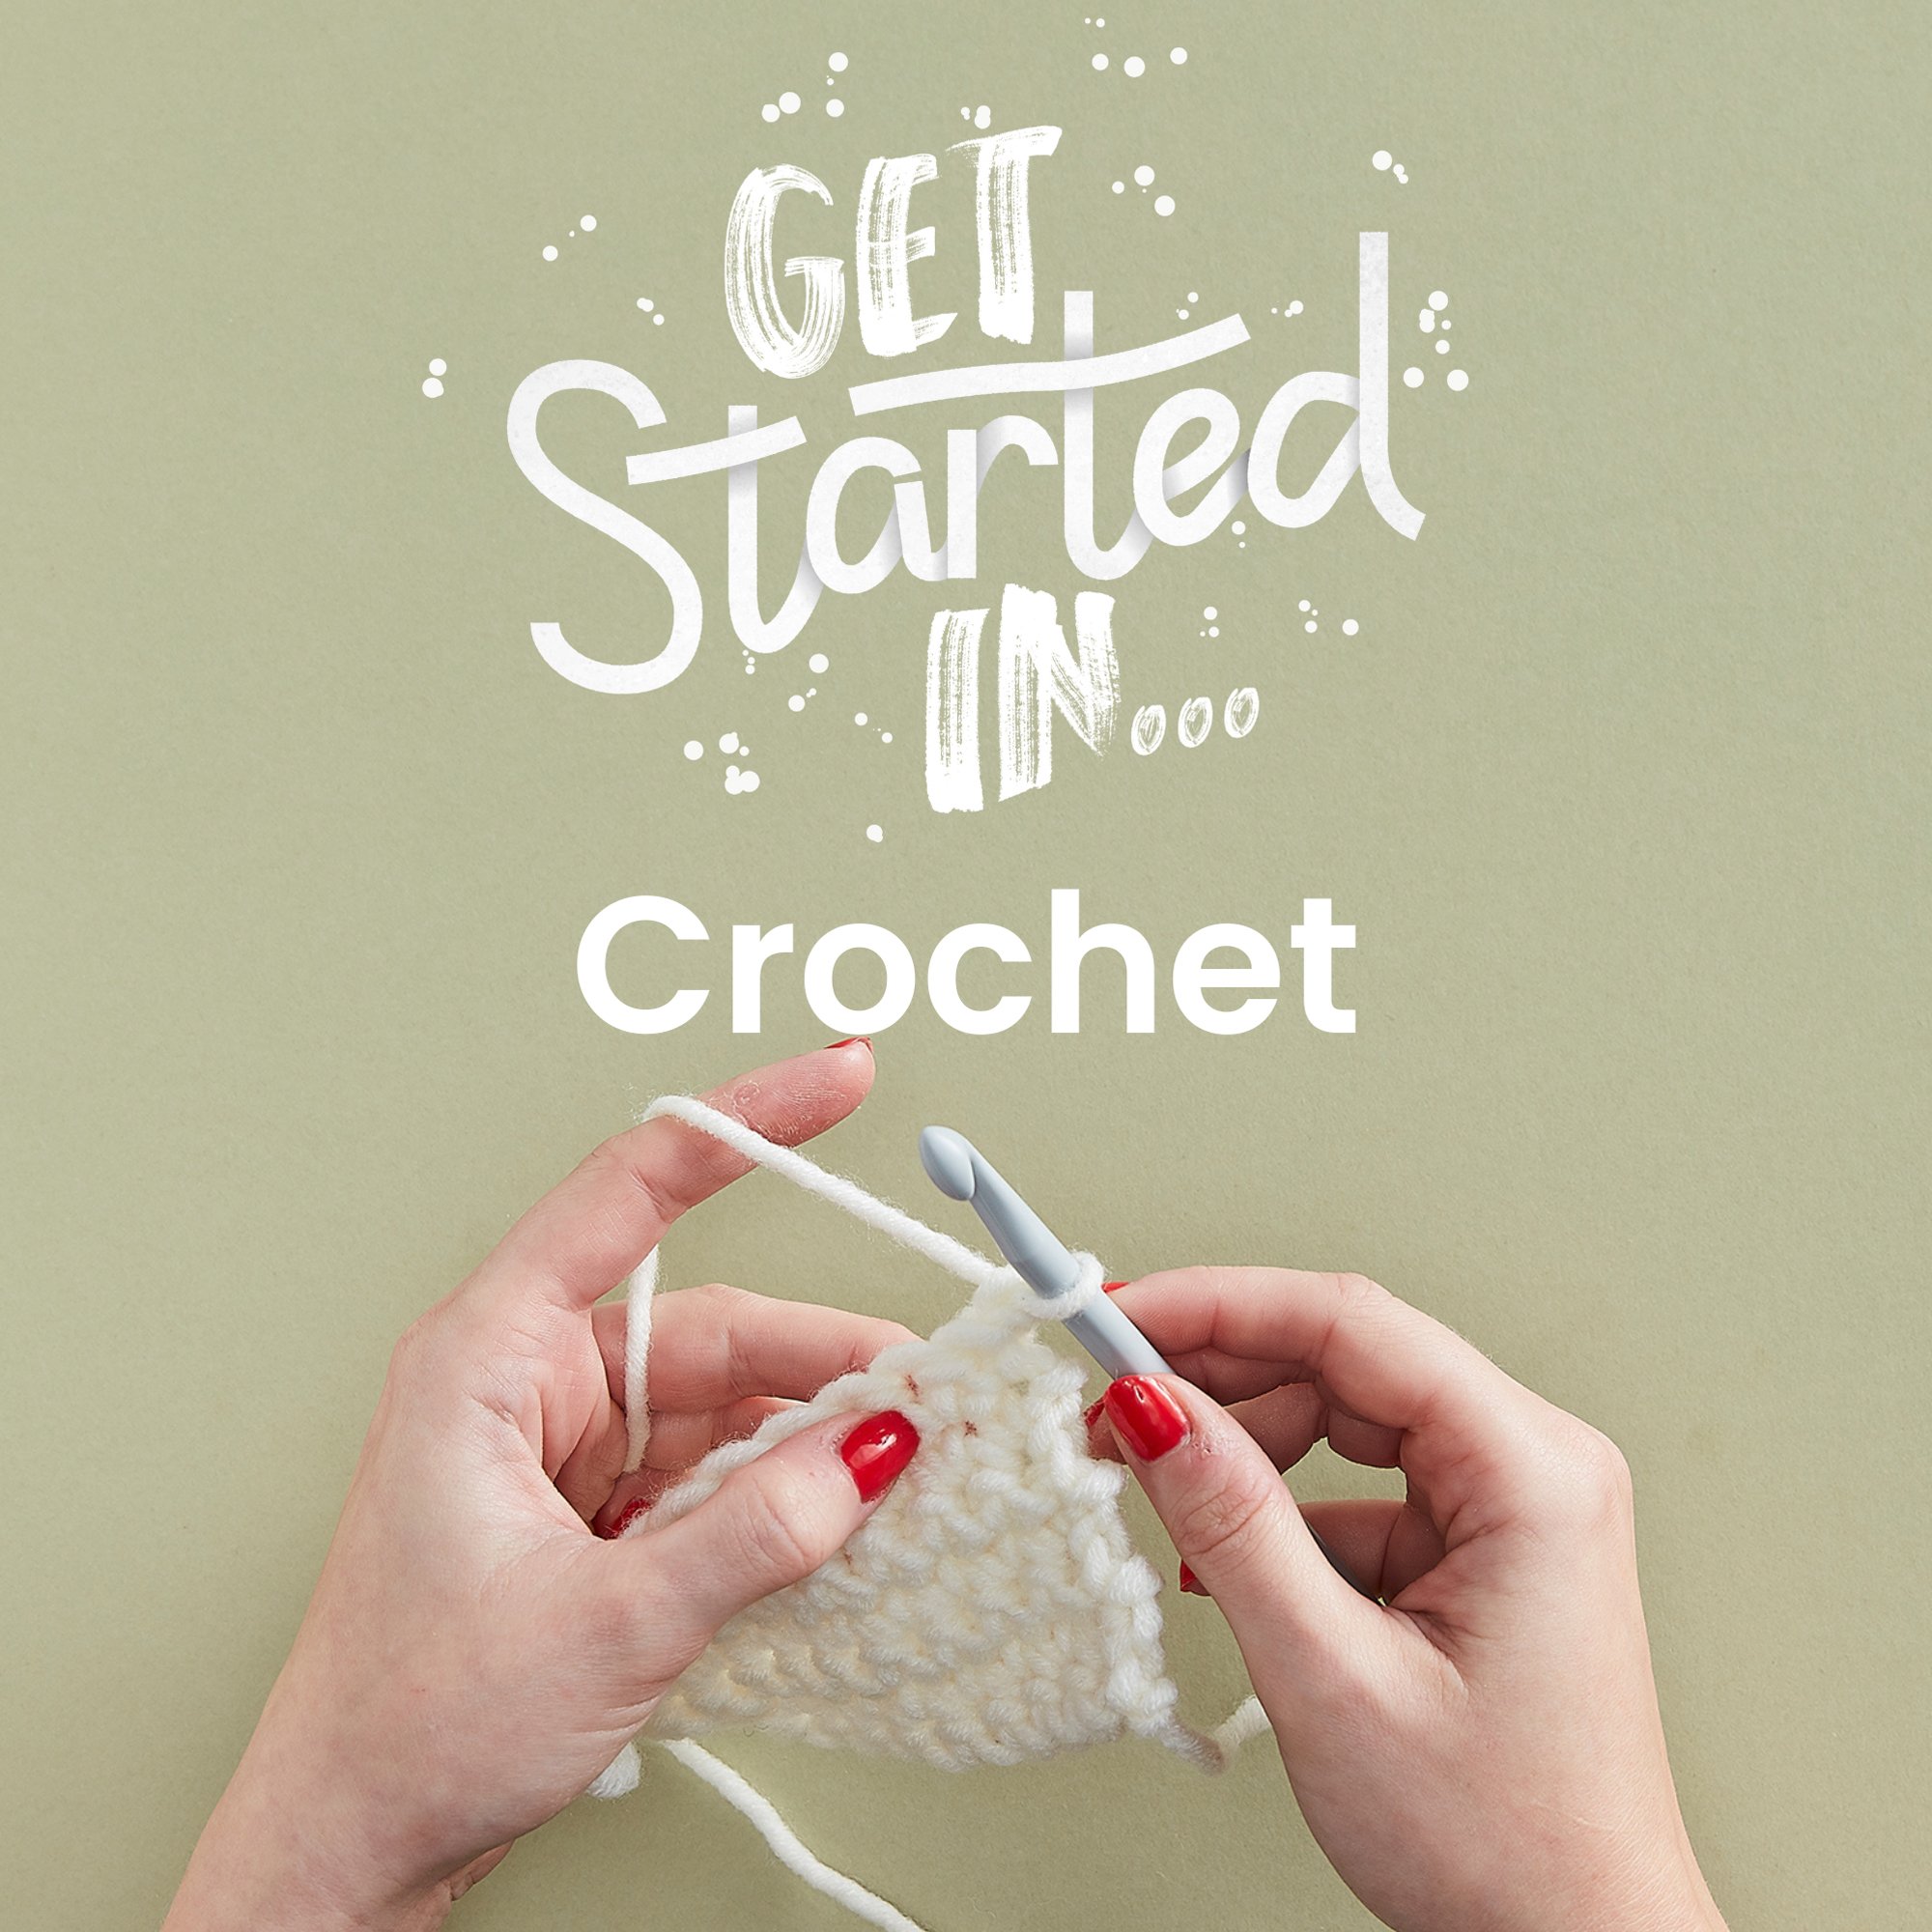  Qupite Crochet Kit, Crochet Kit For Beginners, Starter Pack